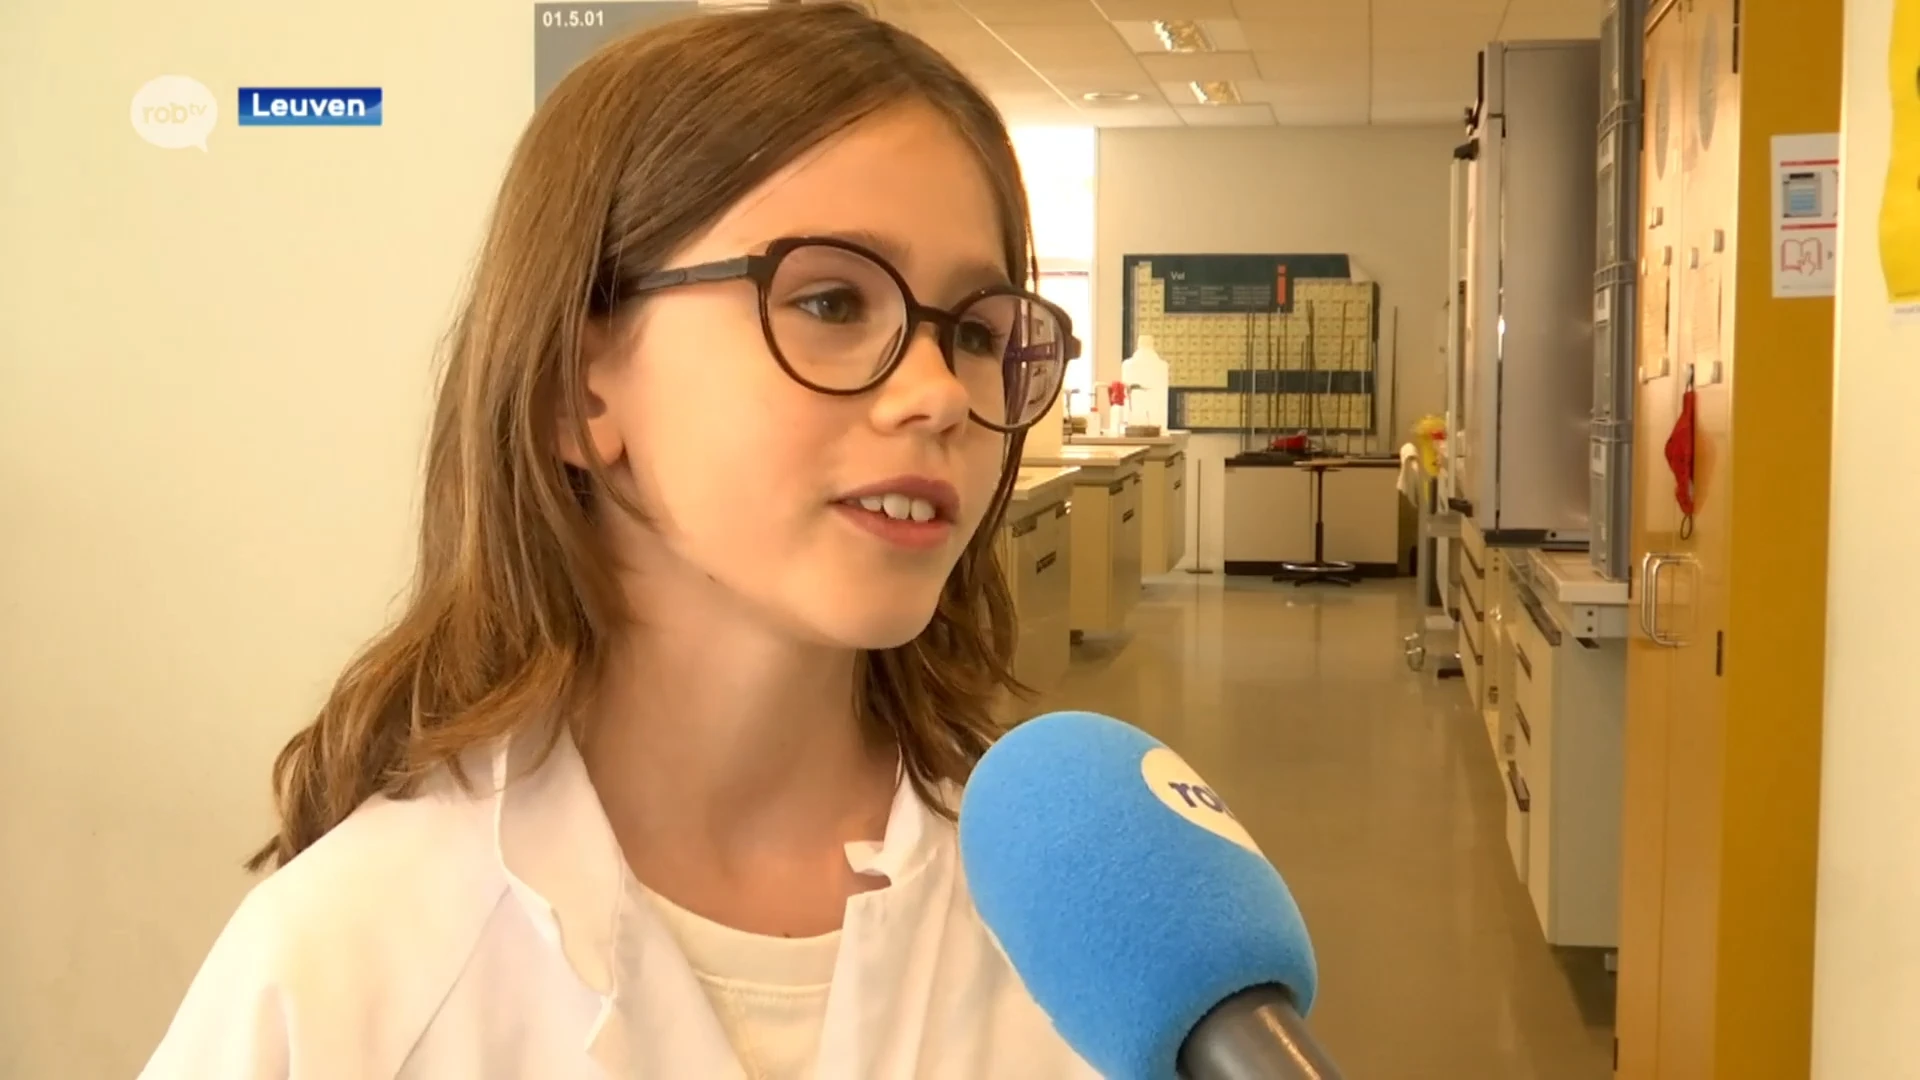 Groep T organiseert wetenschapskampen voor meisjes: "Mensen denken nog te vaak dat wetenschap voor jongens is"